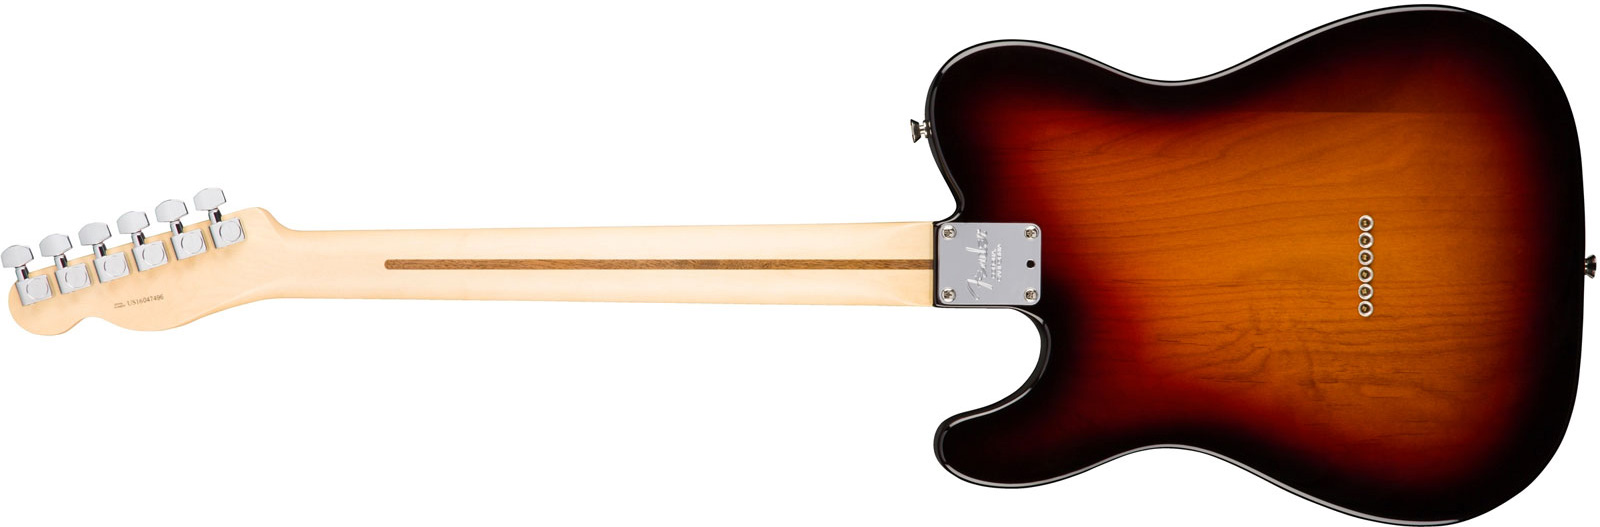 Fender Tele American Professional 2s Usa Rw - 3-color Sunburst - Guitare Électrique Forme Str - Variation 1